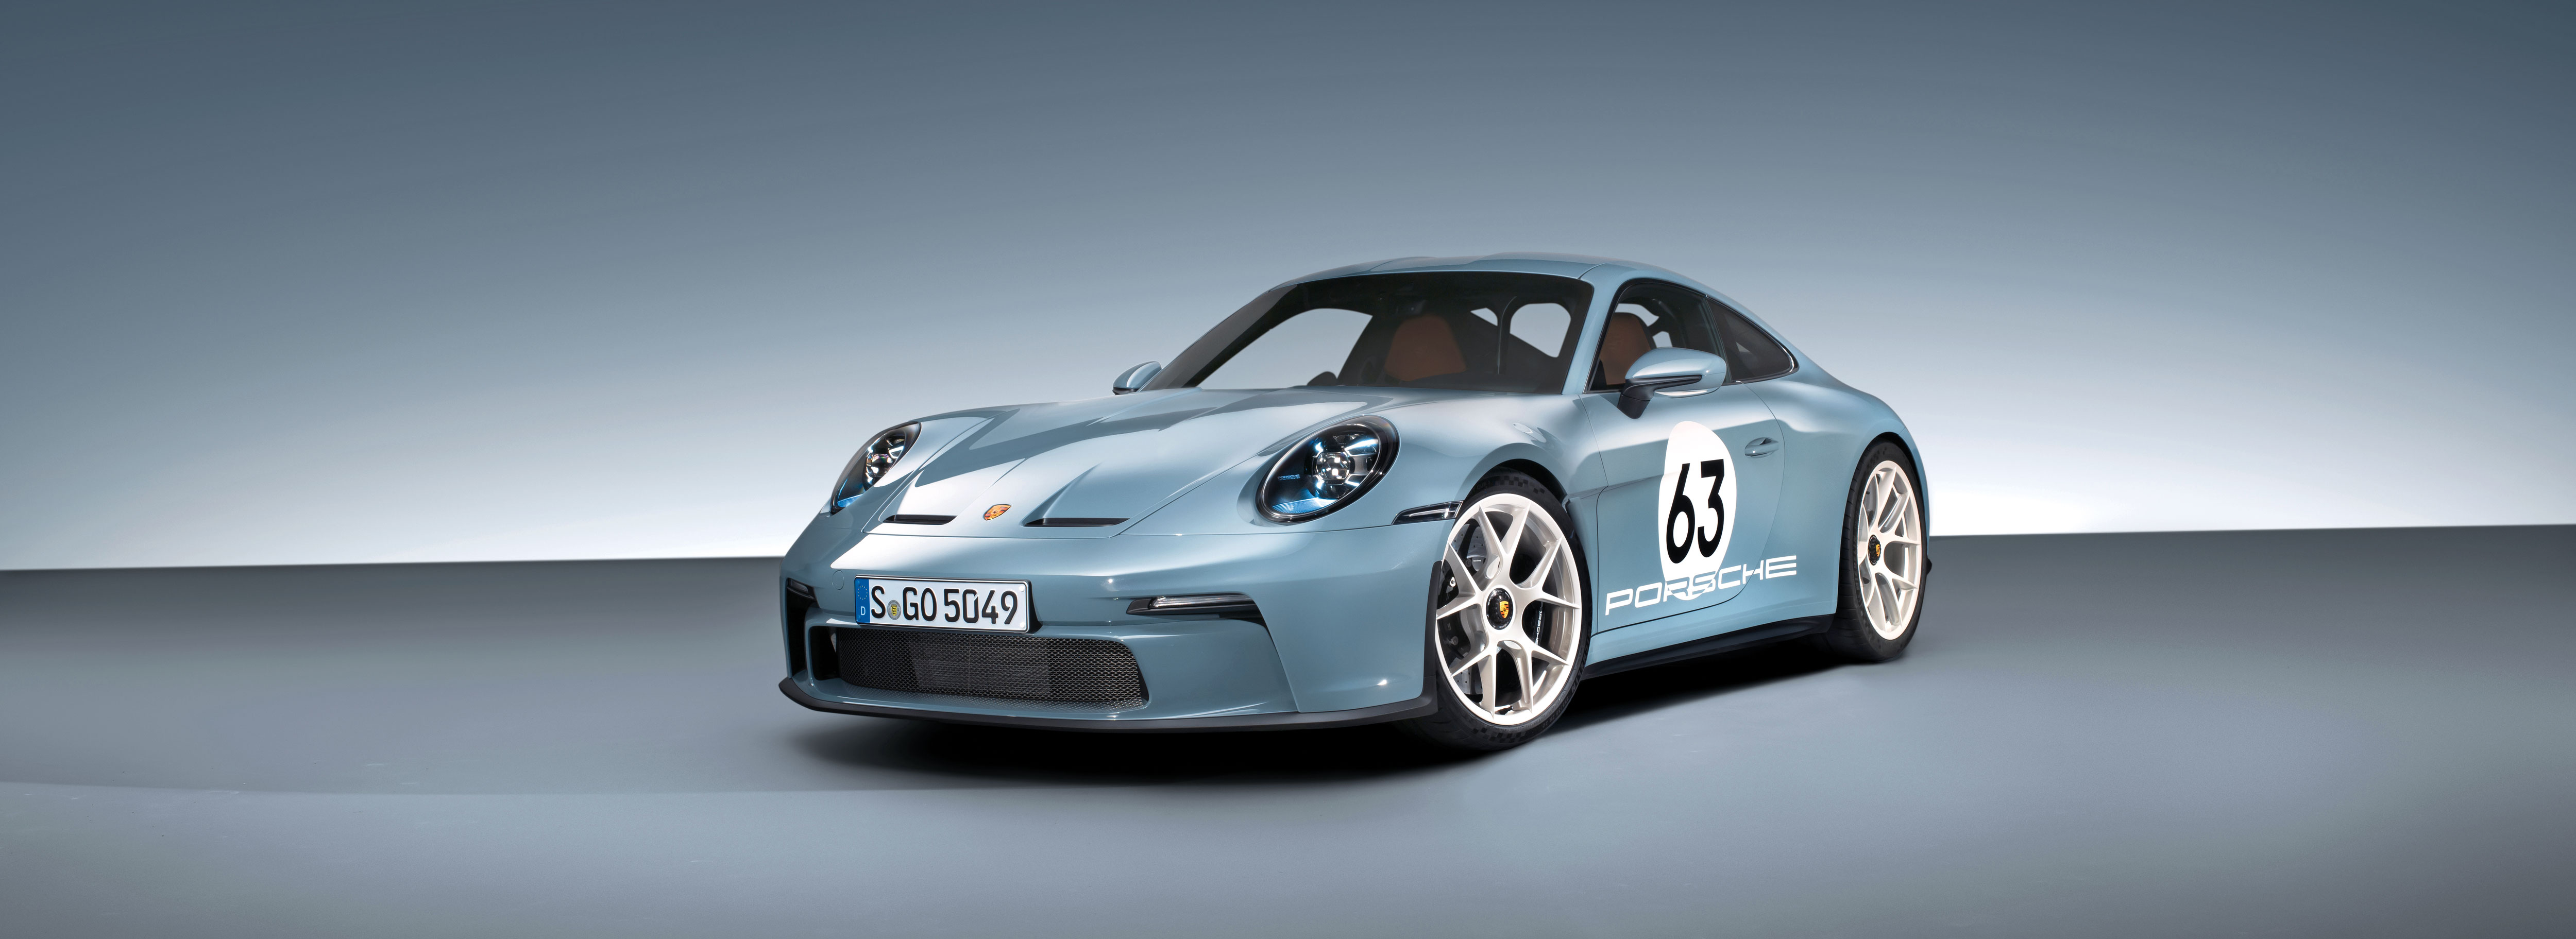 New Porsche 911 ST: first look at GT3-derived lightweight special